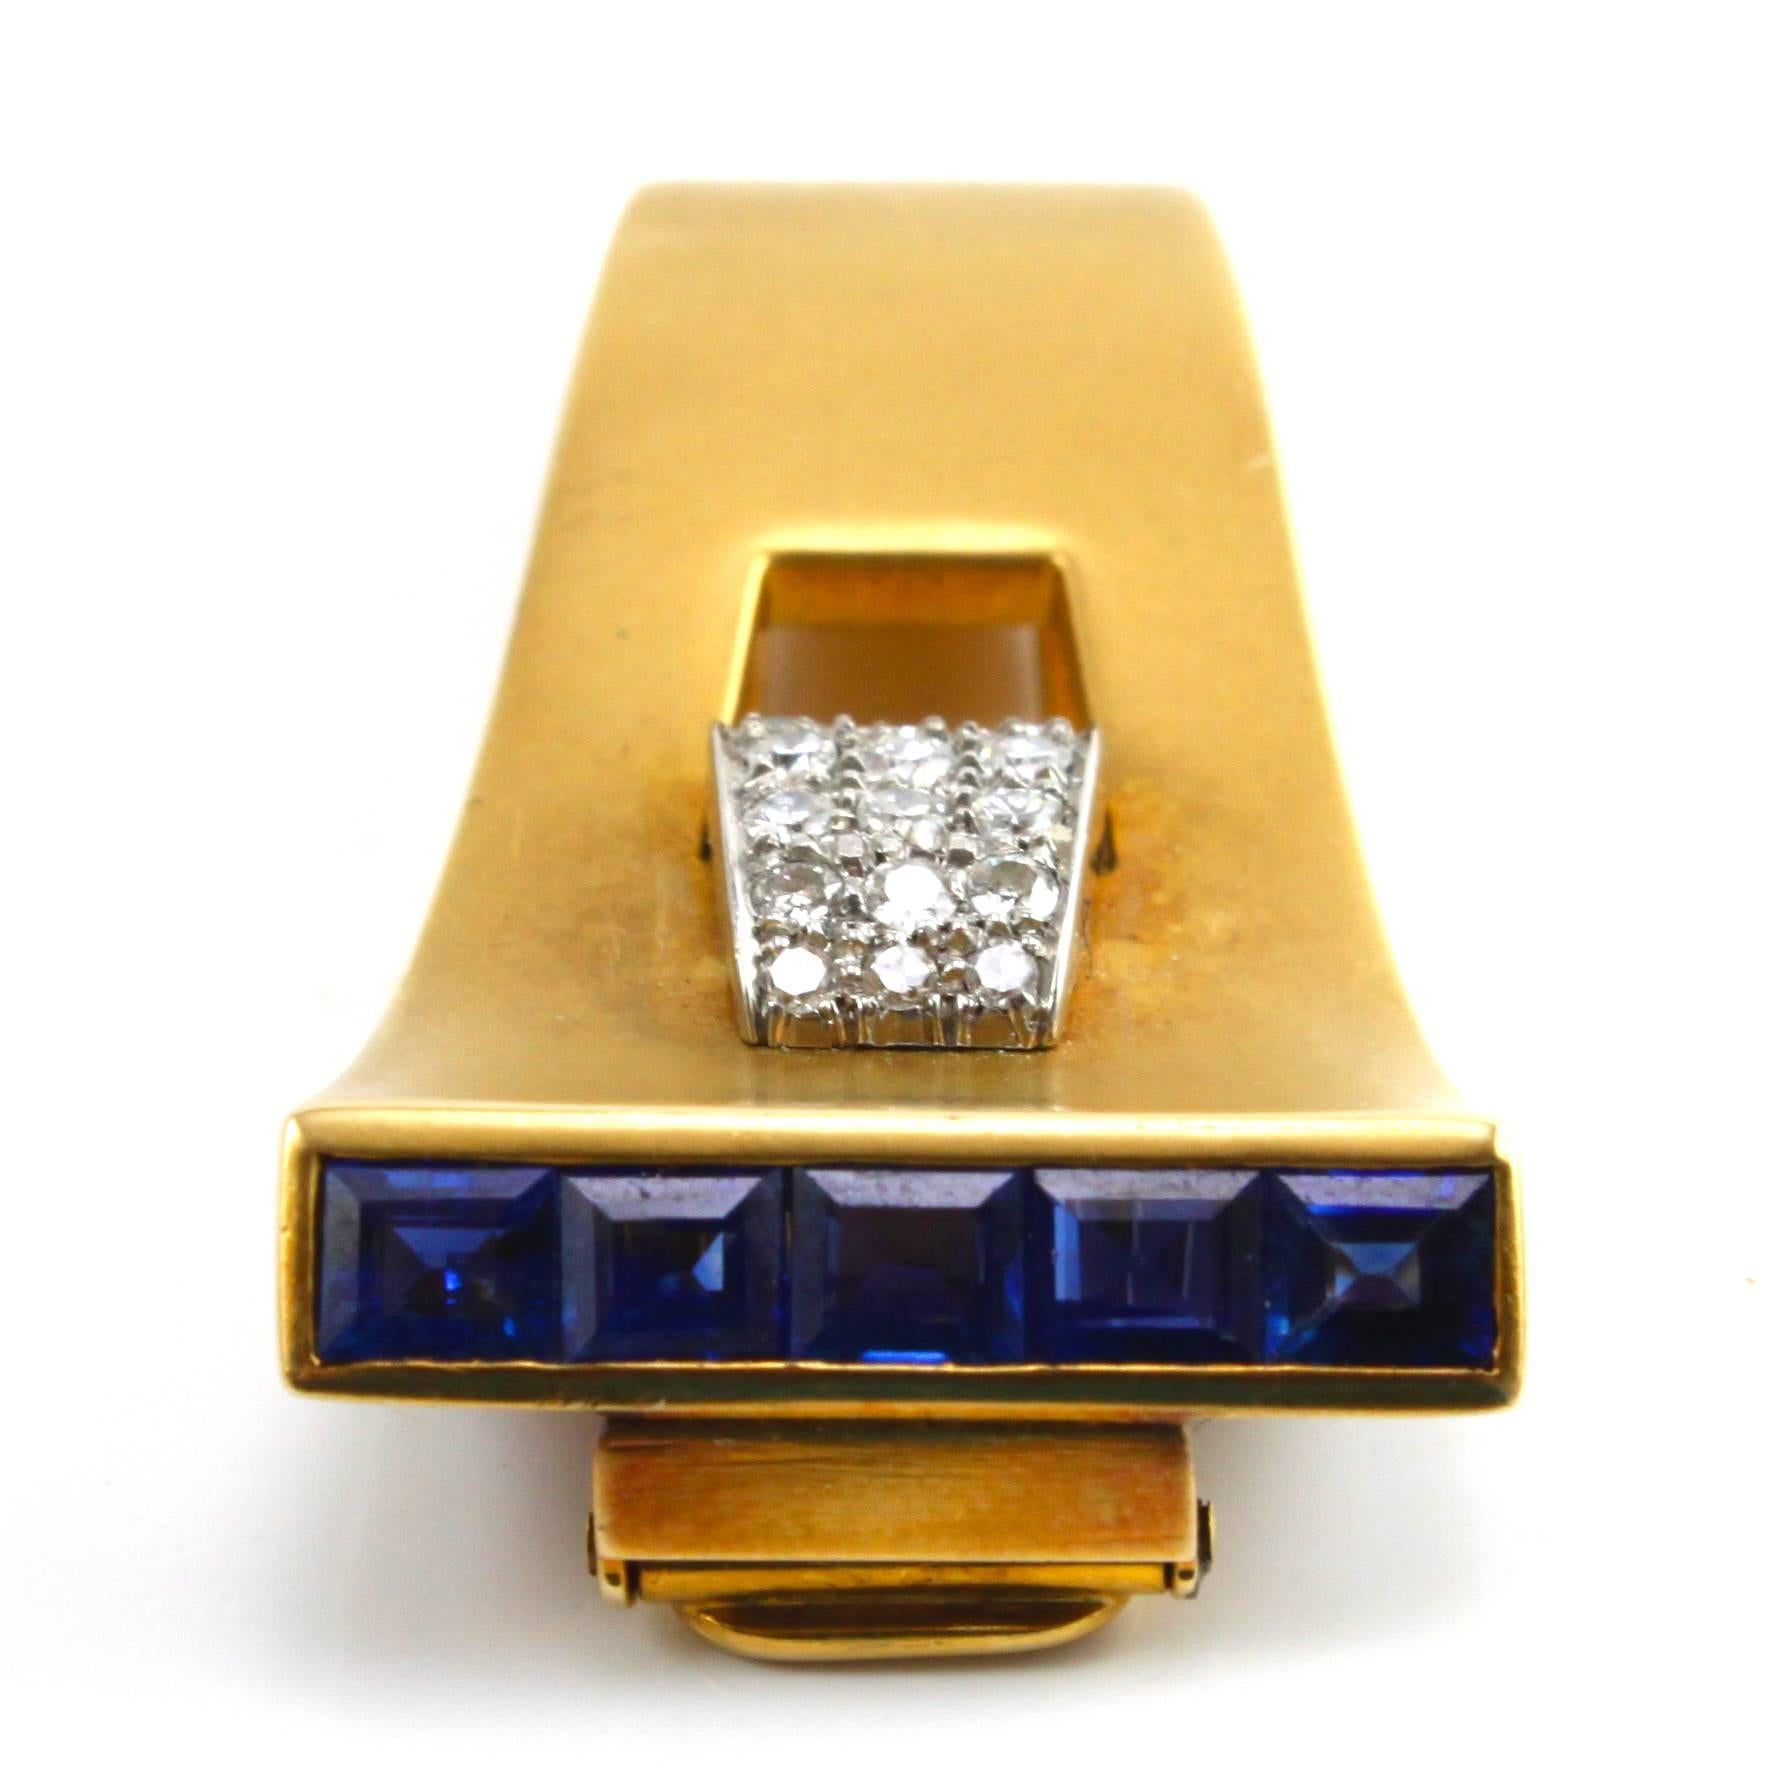 Une très élégante broche à clip en saphir et diamant fabriquée dans les années 1940, représentant le design rétro typique.

Les diamants pèsent environ 1 carat et les saphirs environ 1,5 carat. Les deux sont d'excellente qualité.
